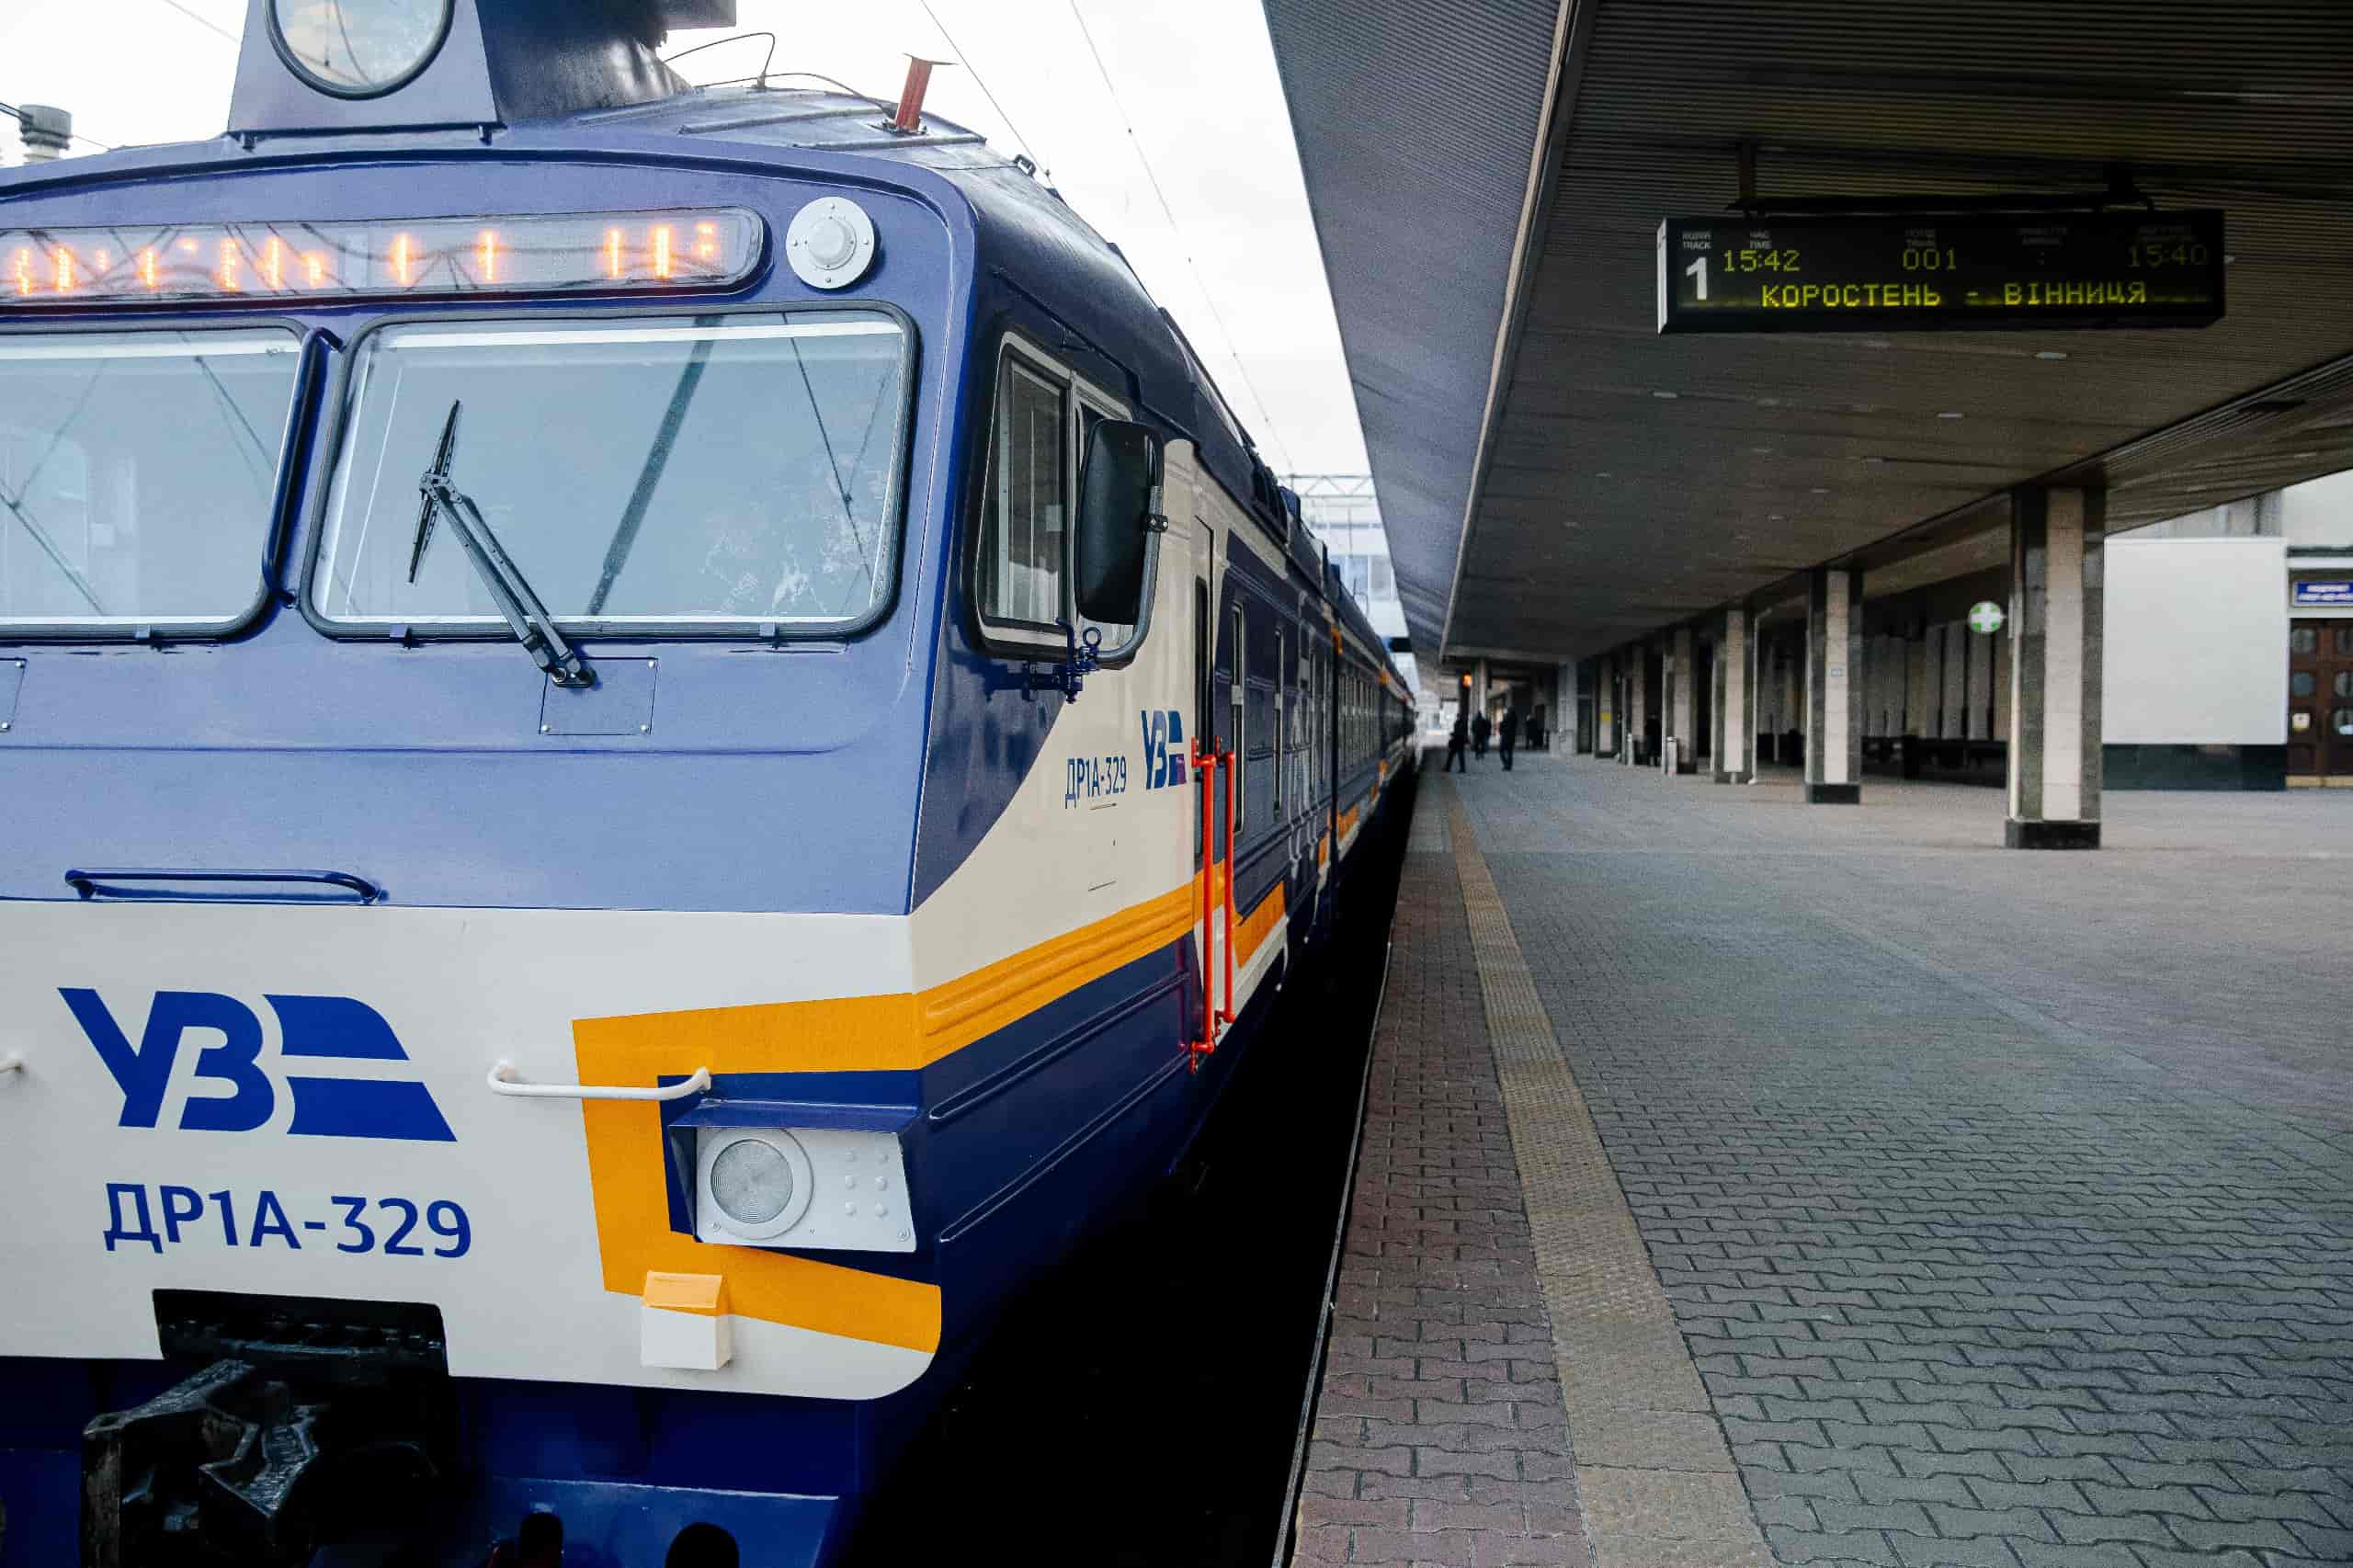 На маршруте Коростень - Житомир - Винница будет курсировать модернизированный дизель-поезд